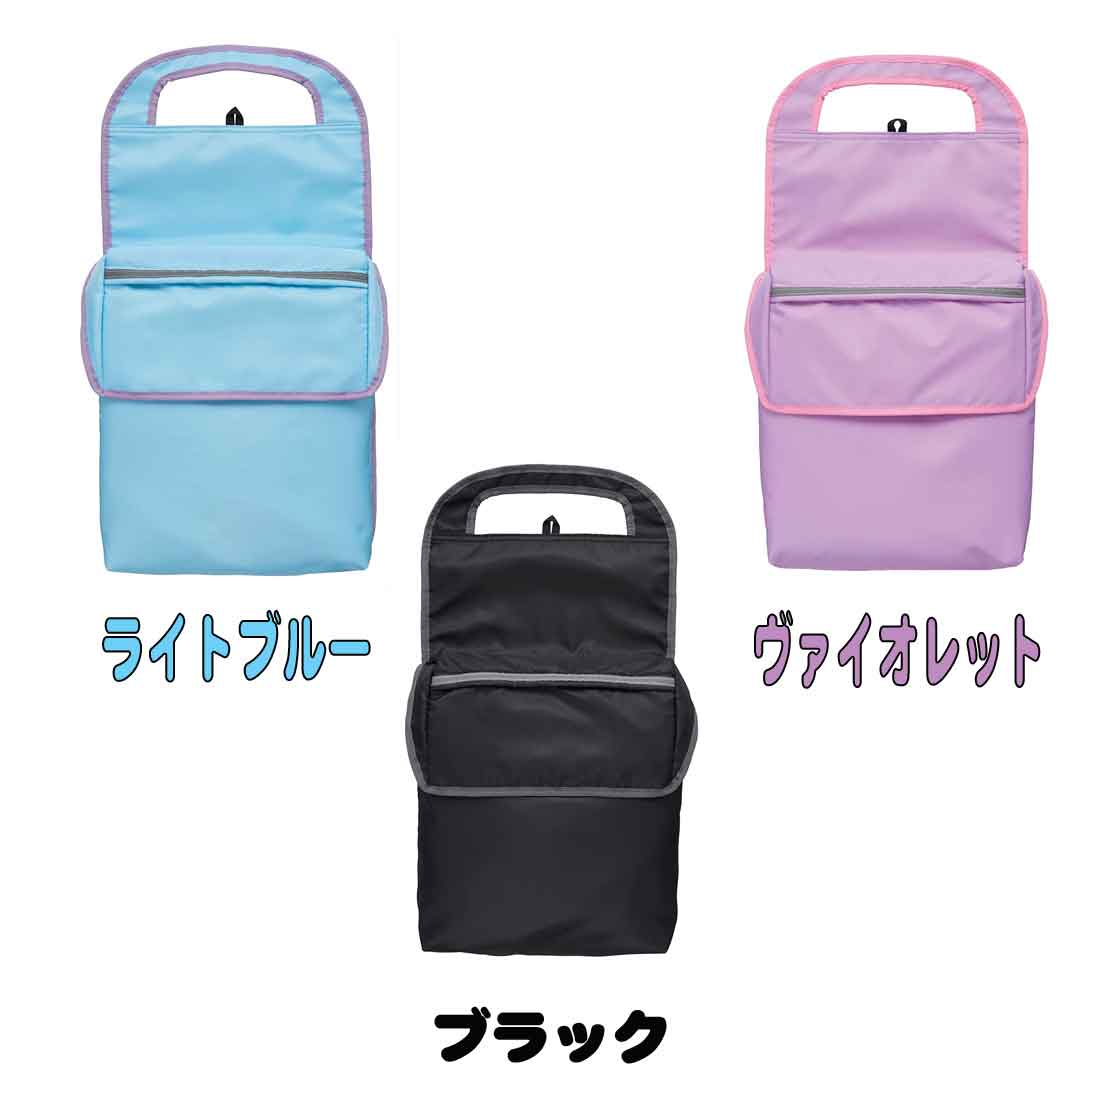 新しいコレクション レイメイ藤井 ランドセルカバー Study-i クッションポケット付き ライトブルー RS261H 